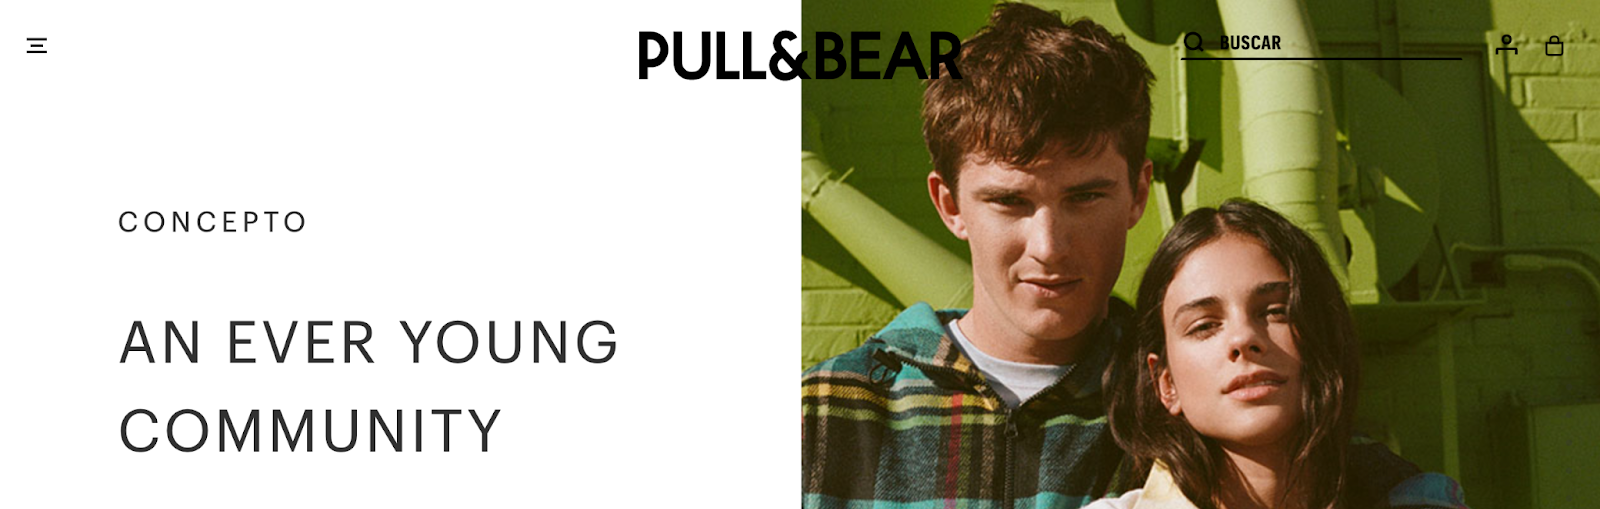 Copywriting pull&bear